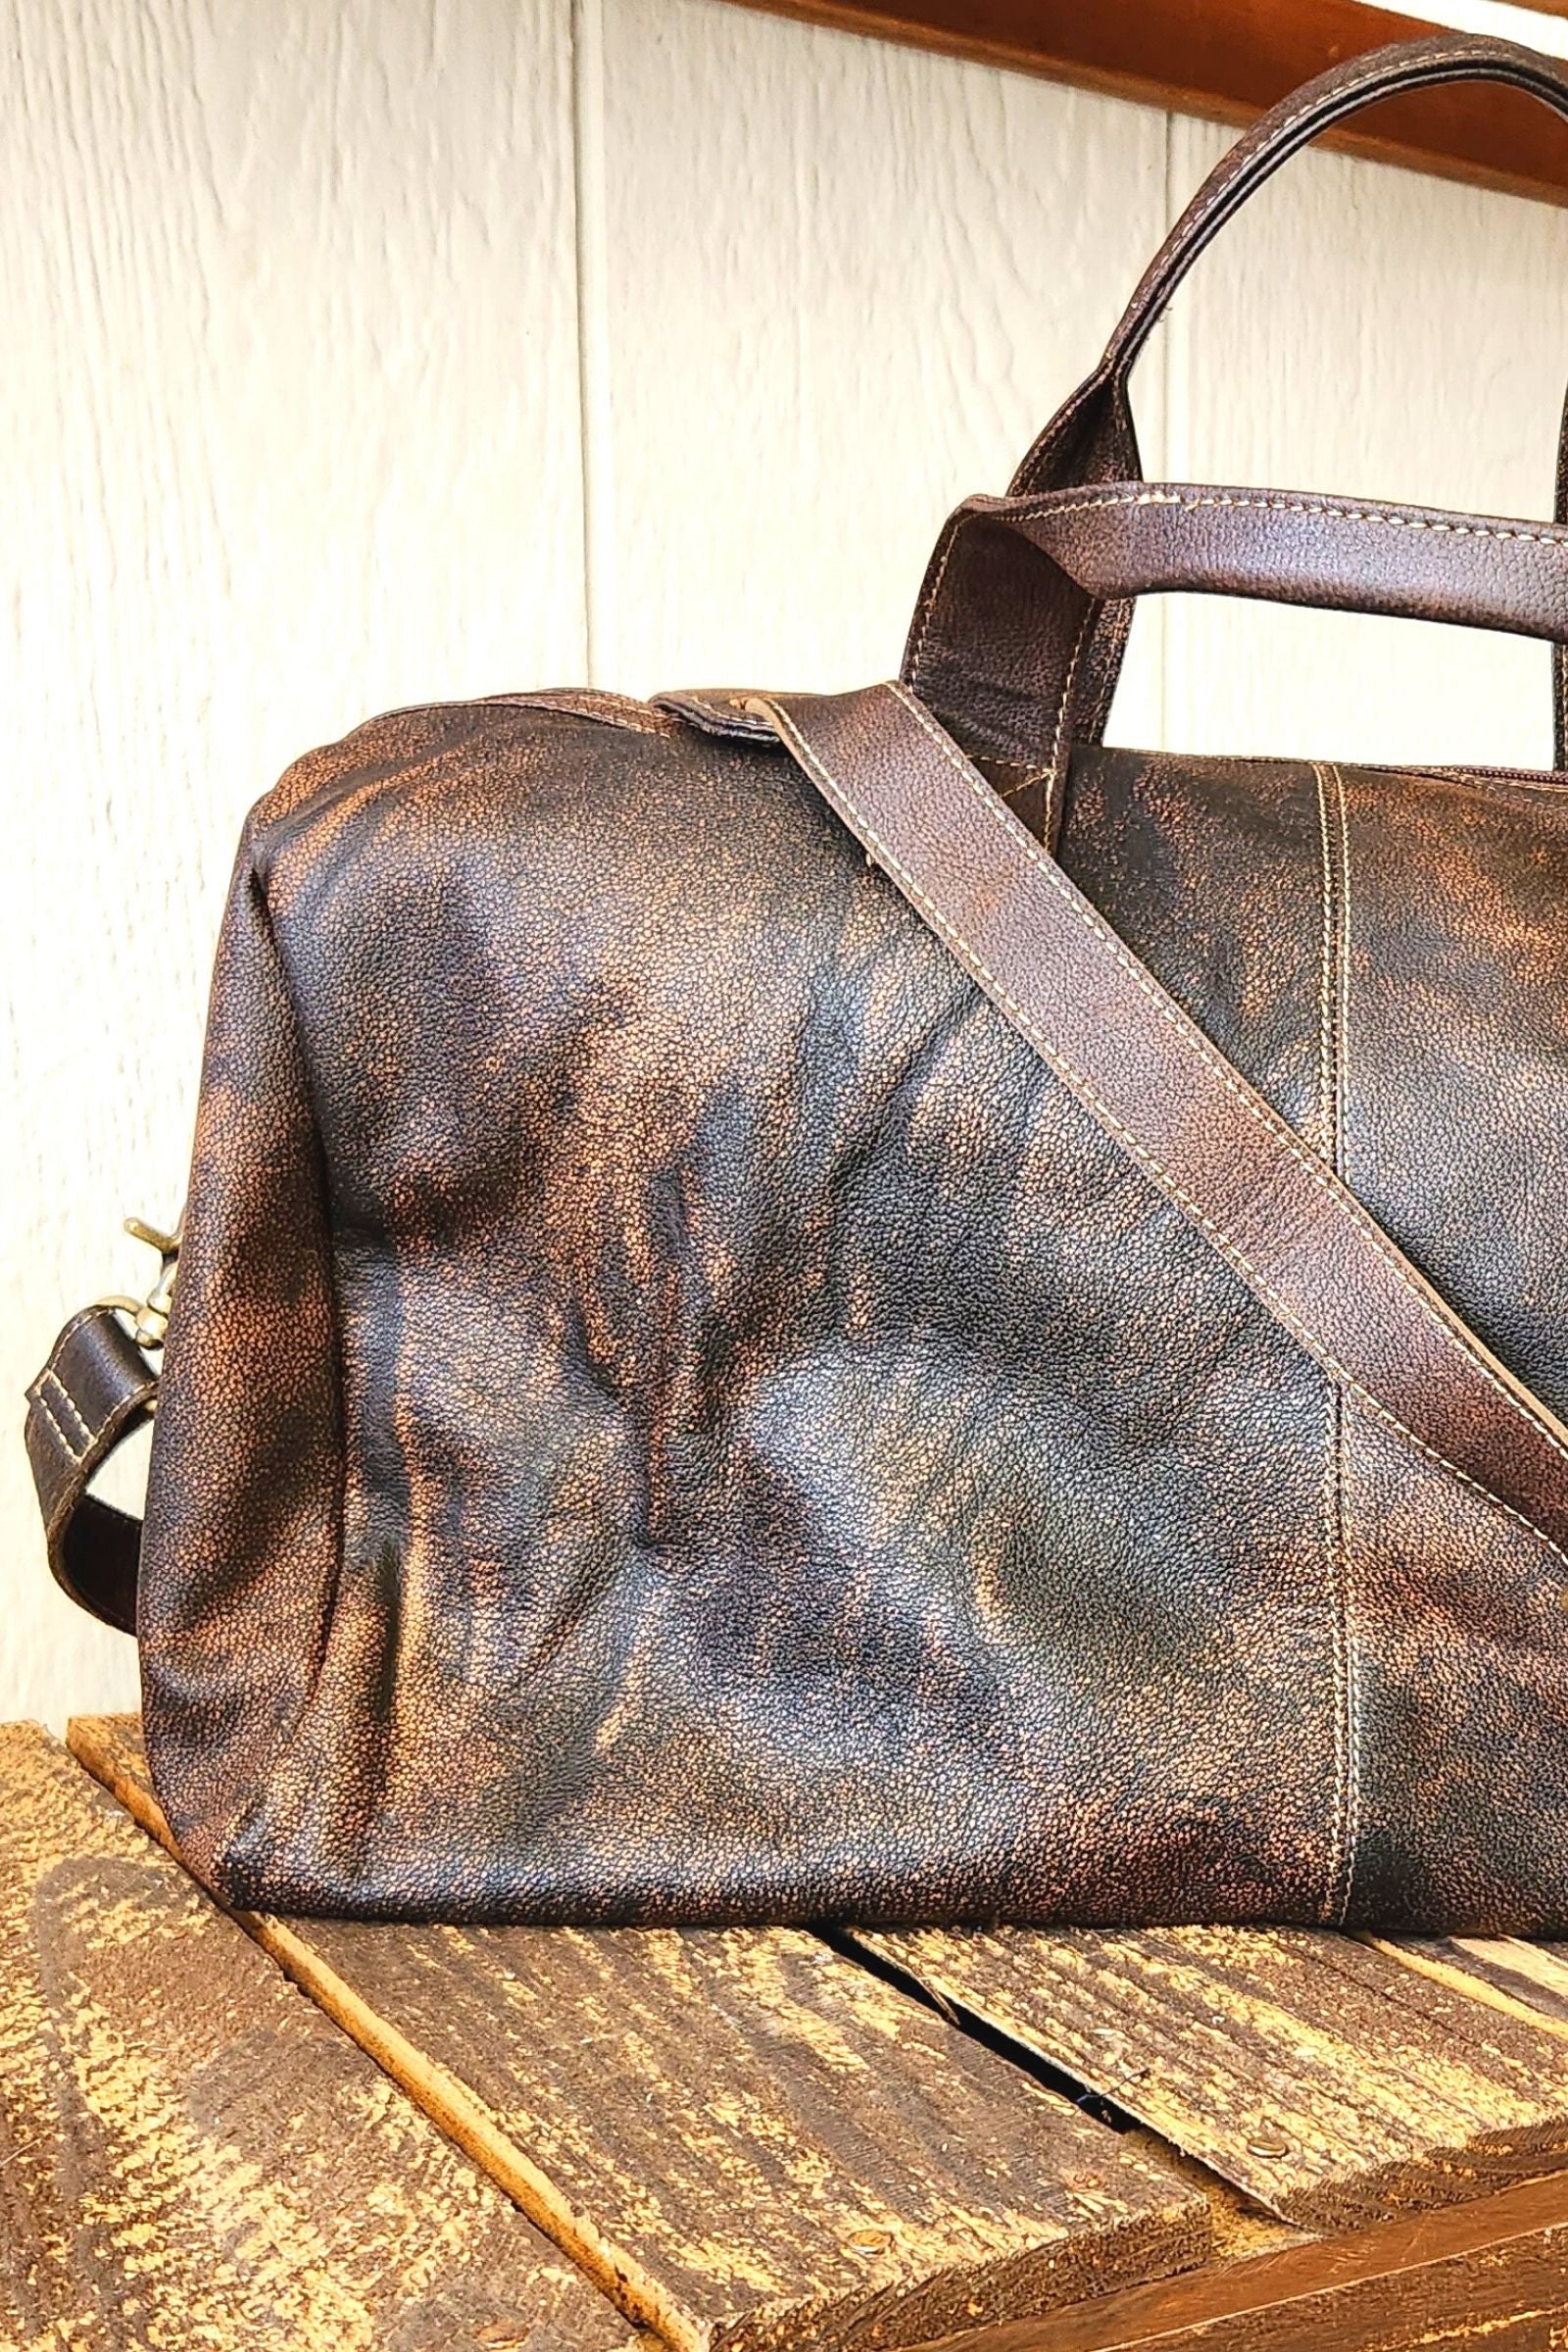 Crackerjac Leather & Cowhide Bag